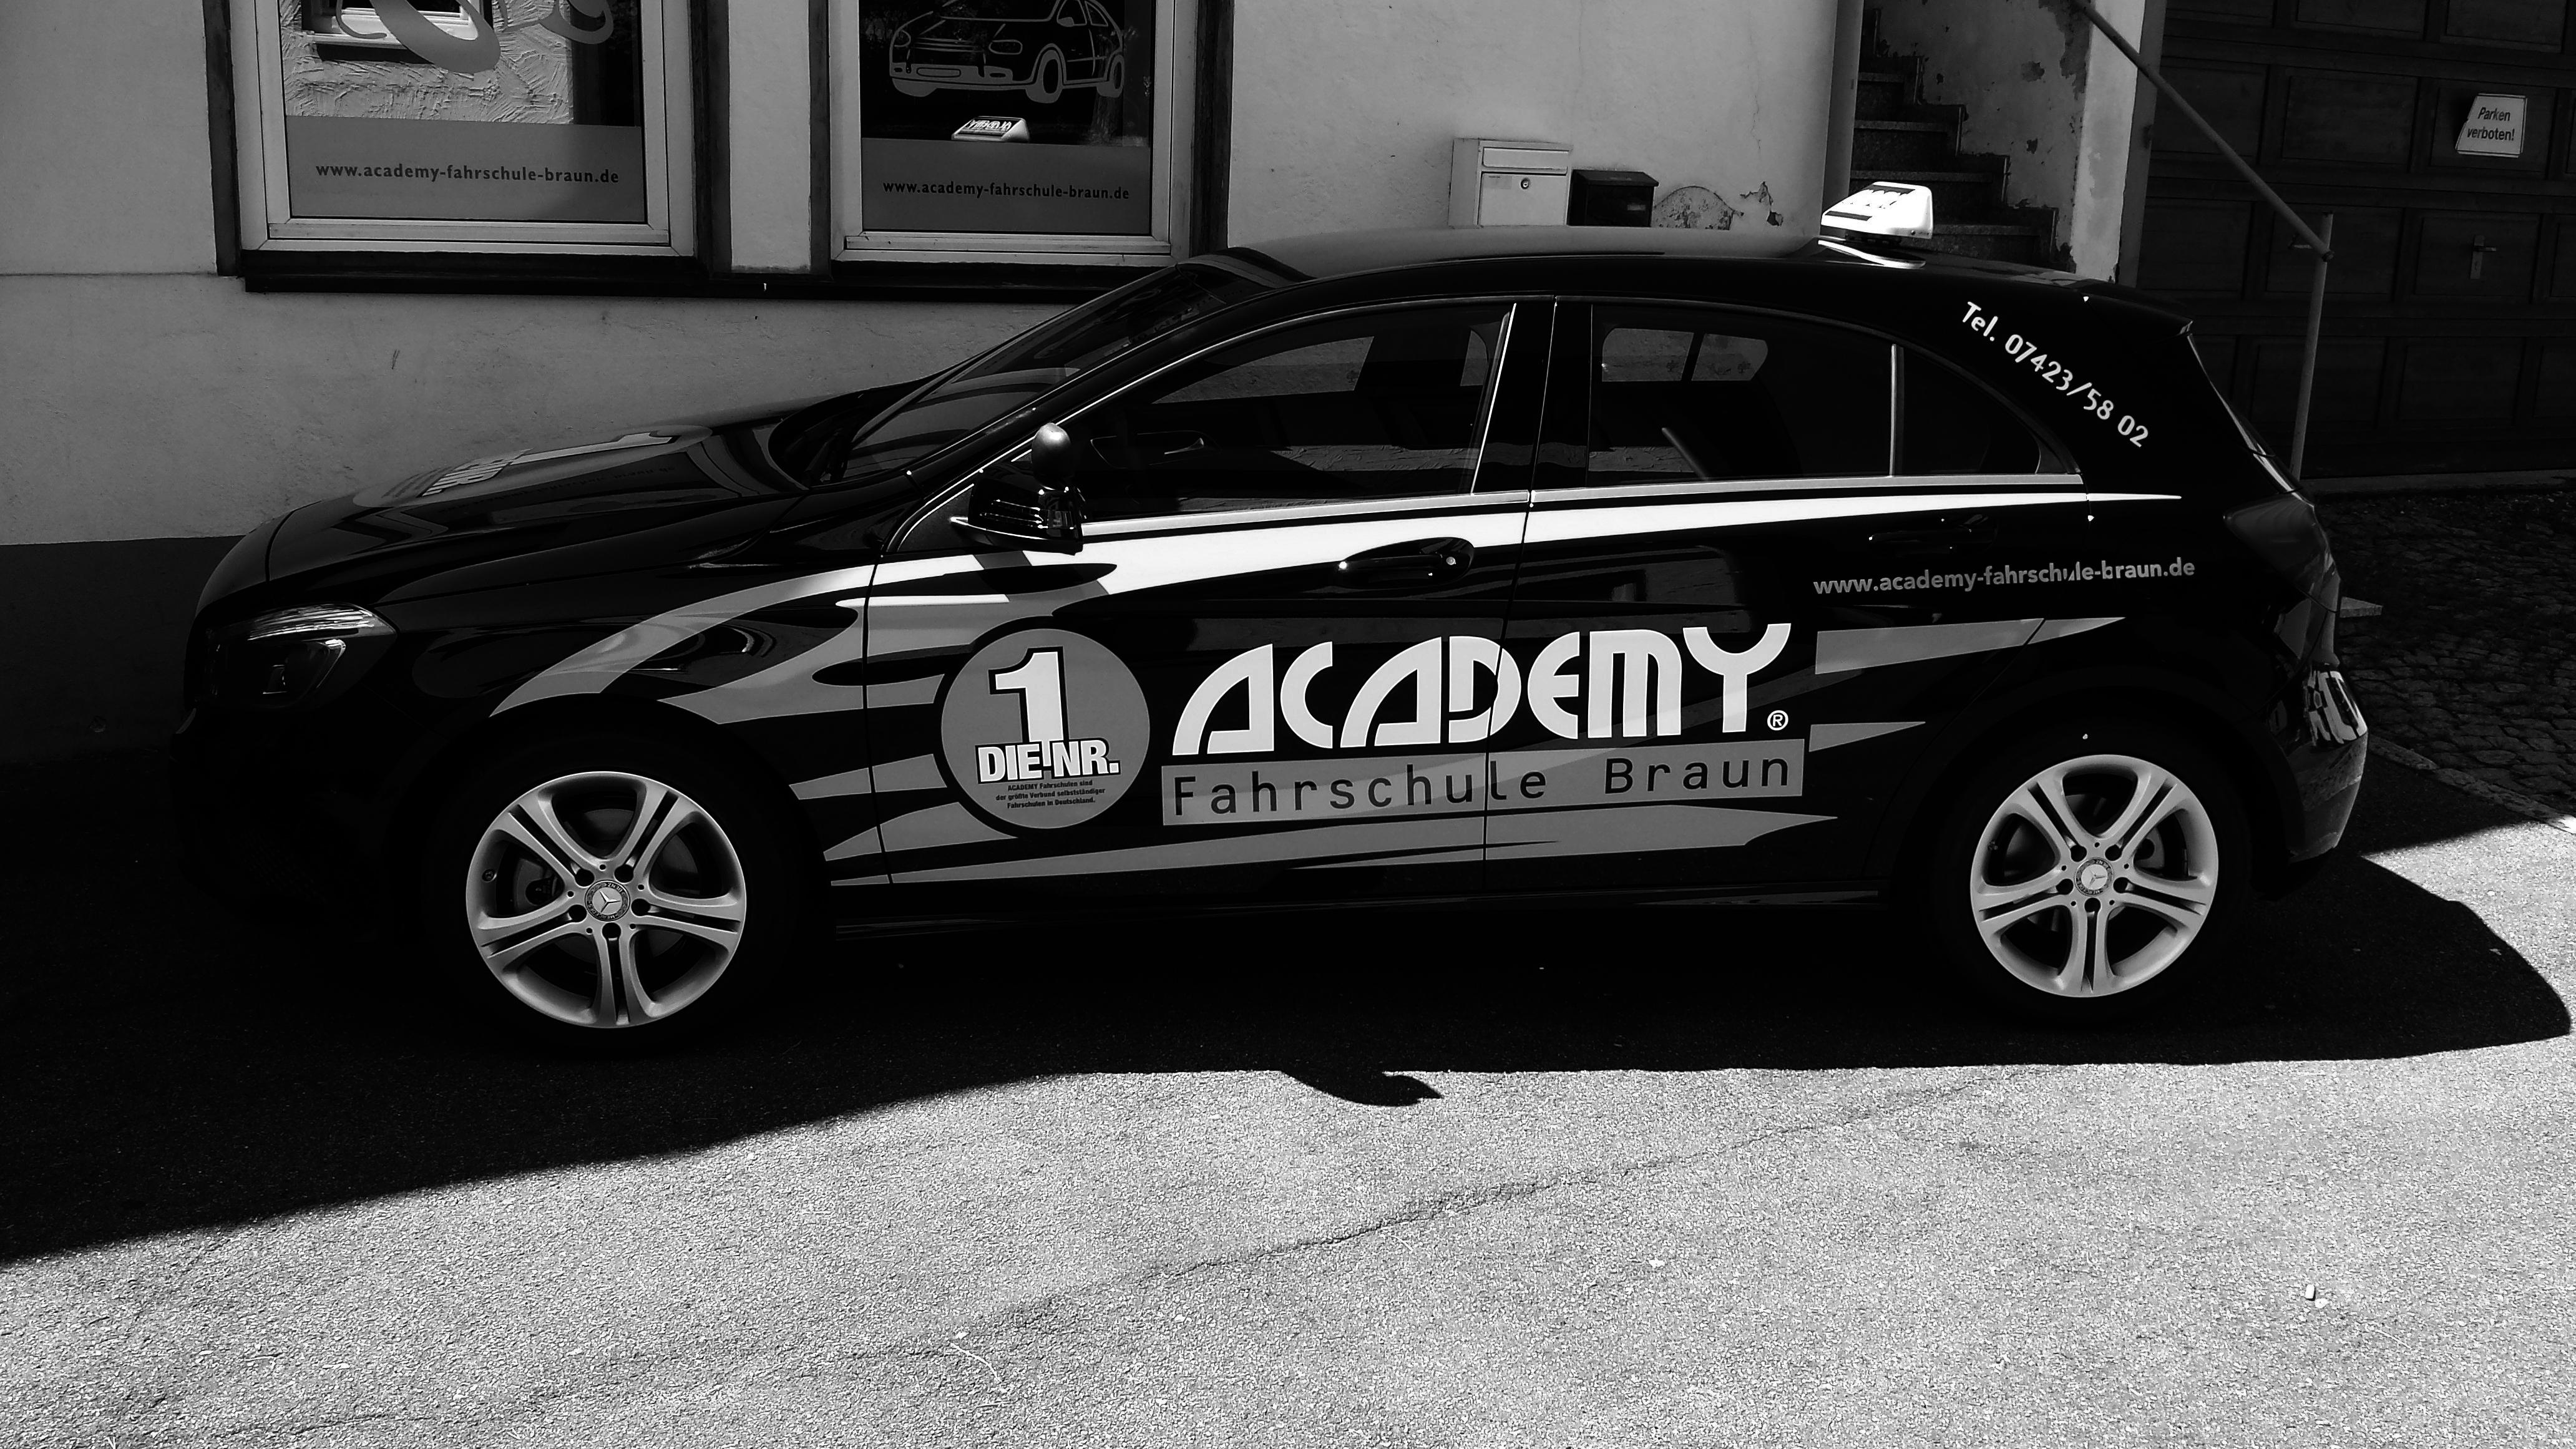 ACADEMY Fahrschule - de.academy.fahrschulen.model.instructor.Instructor@c0f8